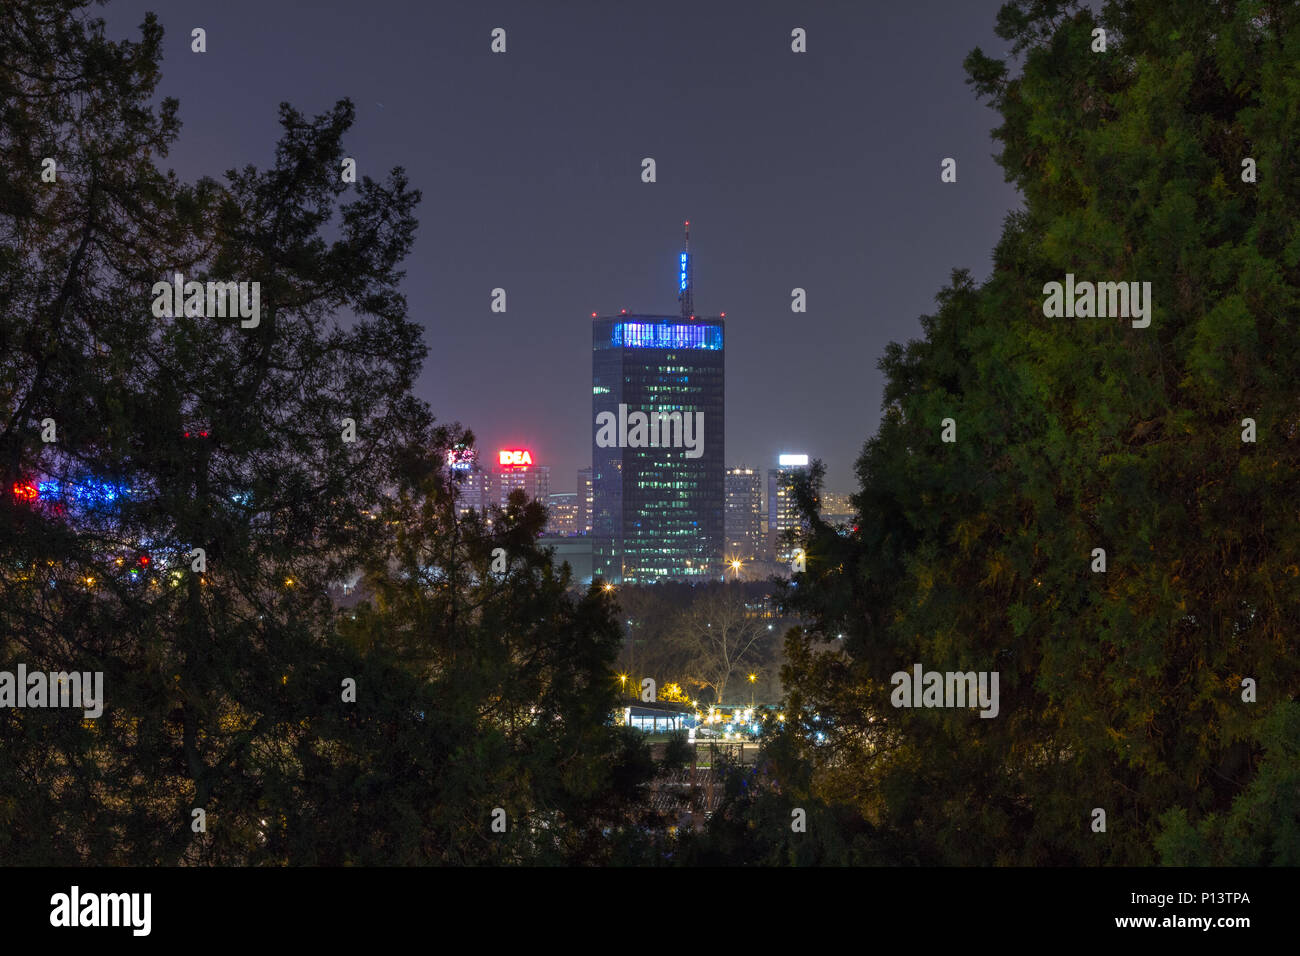 Belgrad, SERBIEN - MÄRZ 21, 2015: Skyline von Neu Belgrad (Novi Beograd) bei Nacht von der Festung Kalemegdan gesehen. Die wichtigsten Sehenswürdigkeiten von der Distri Stockfoto